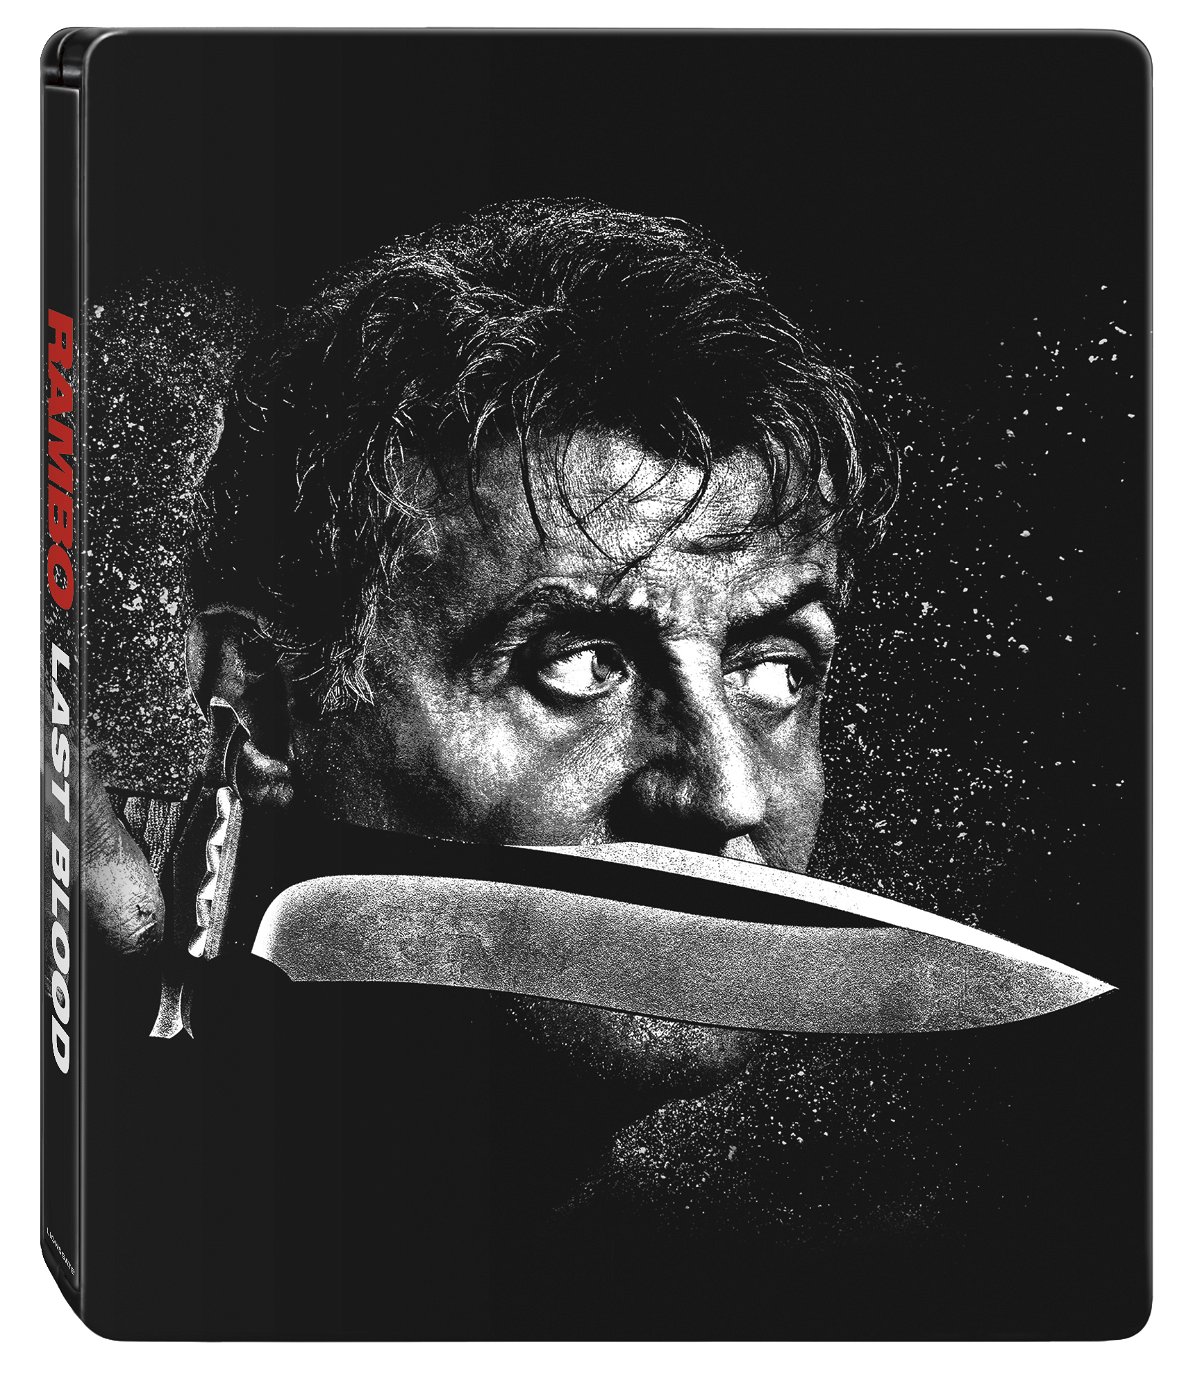 La copertina dell'edizione Steelbook di Rambo: Last Blood